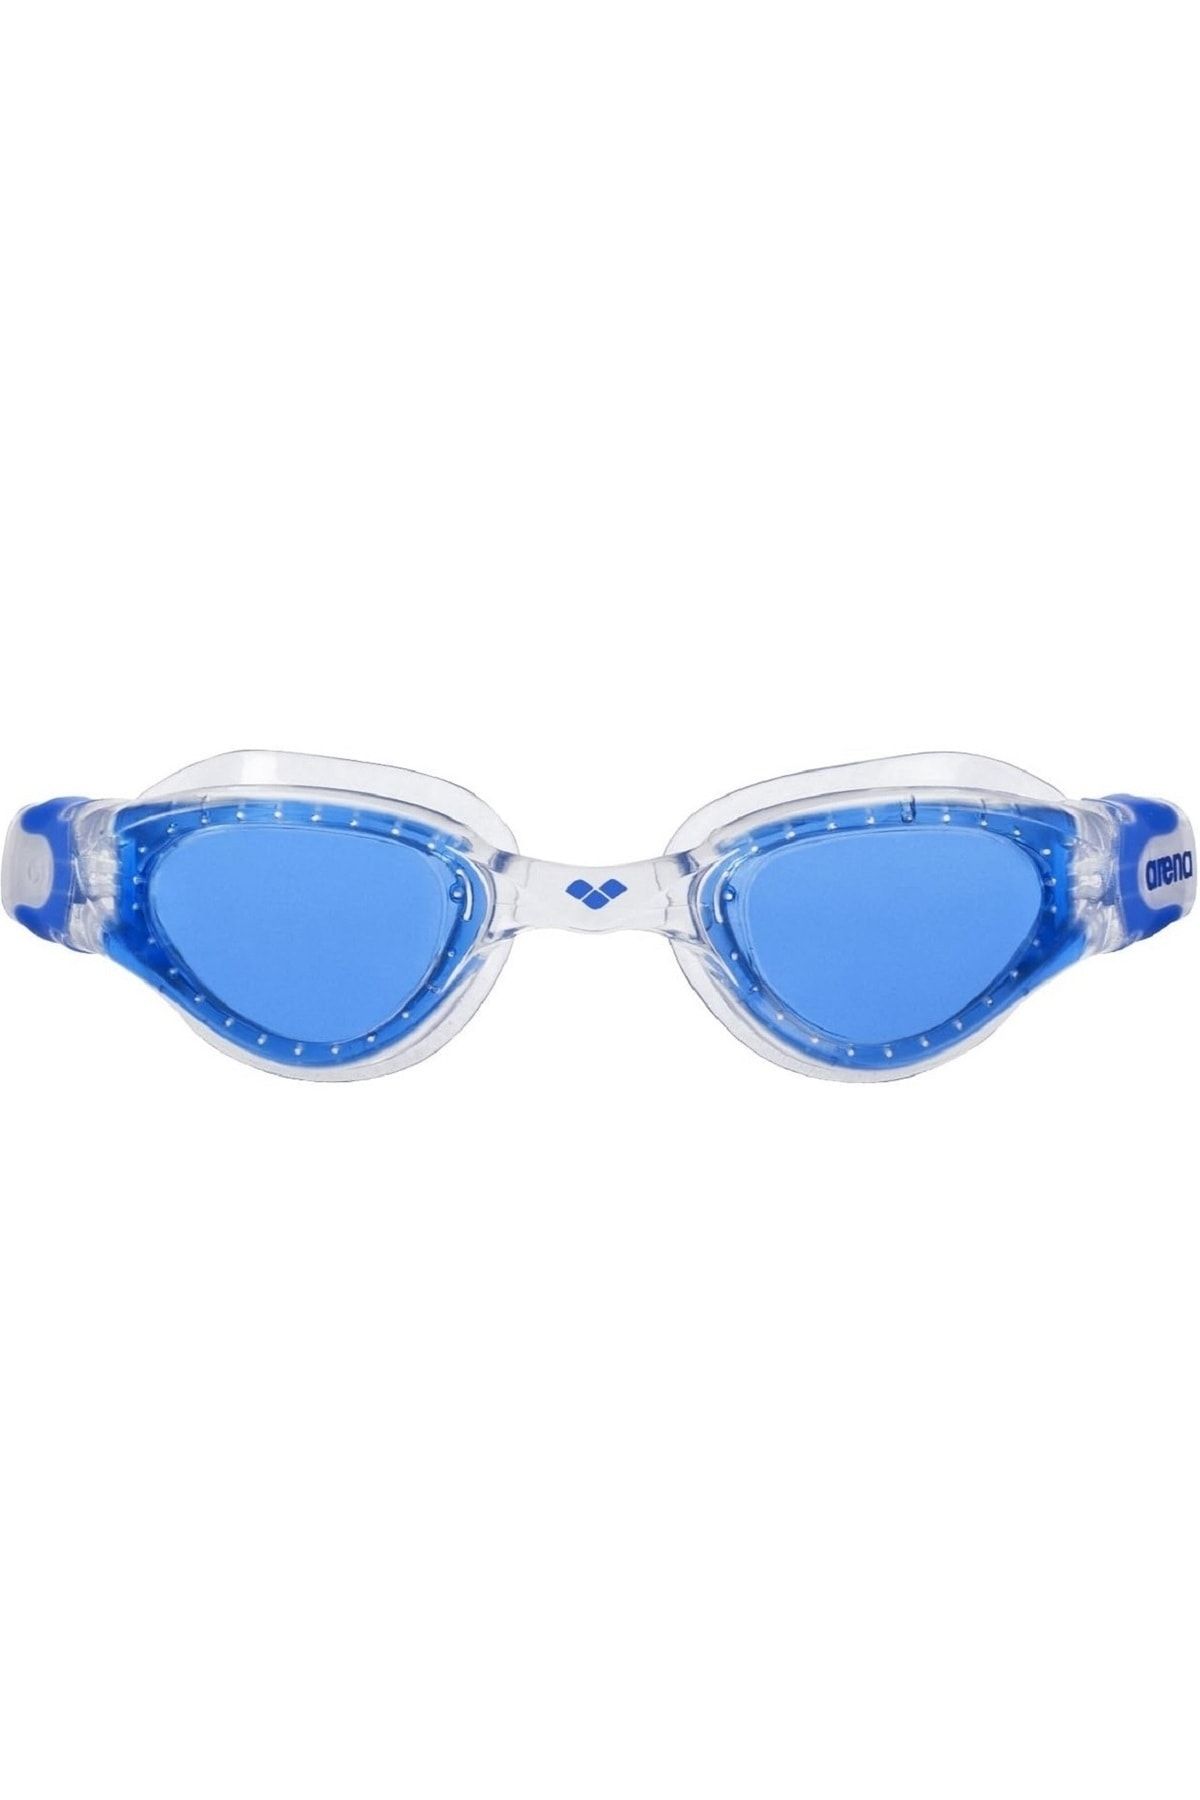 Arena Çocuk Yüzücü Gözlüğü - Crusier Soft - 1E00217